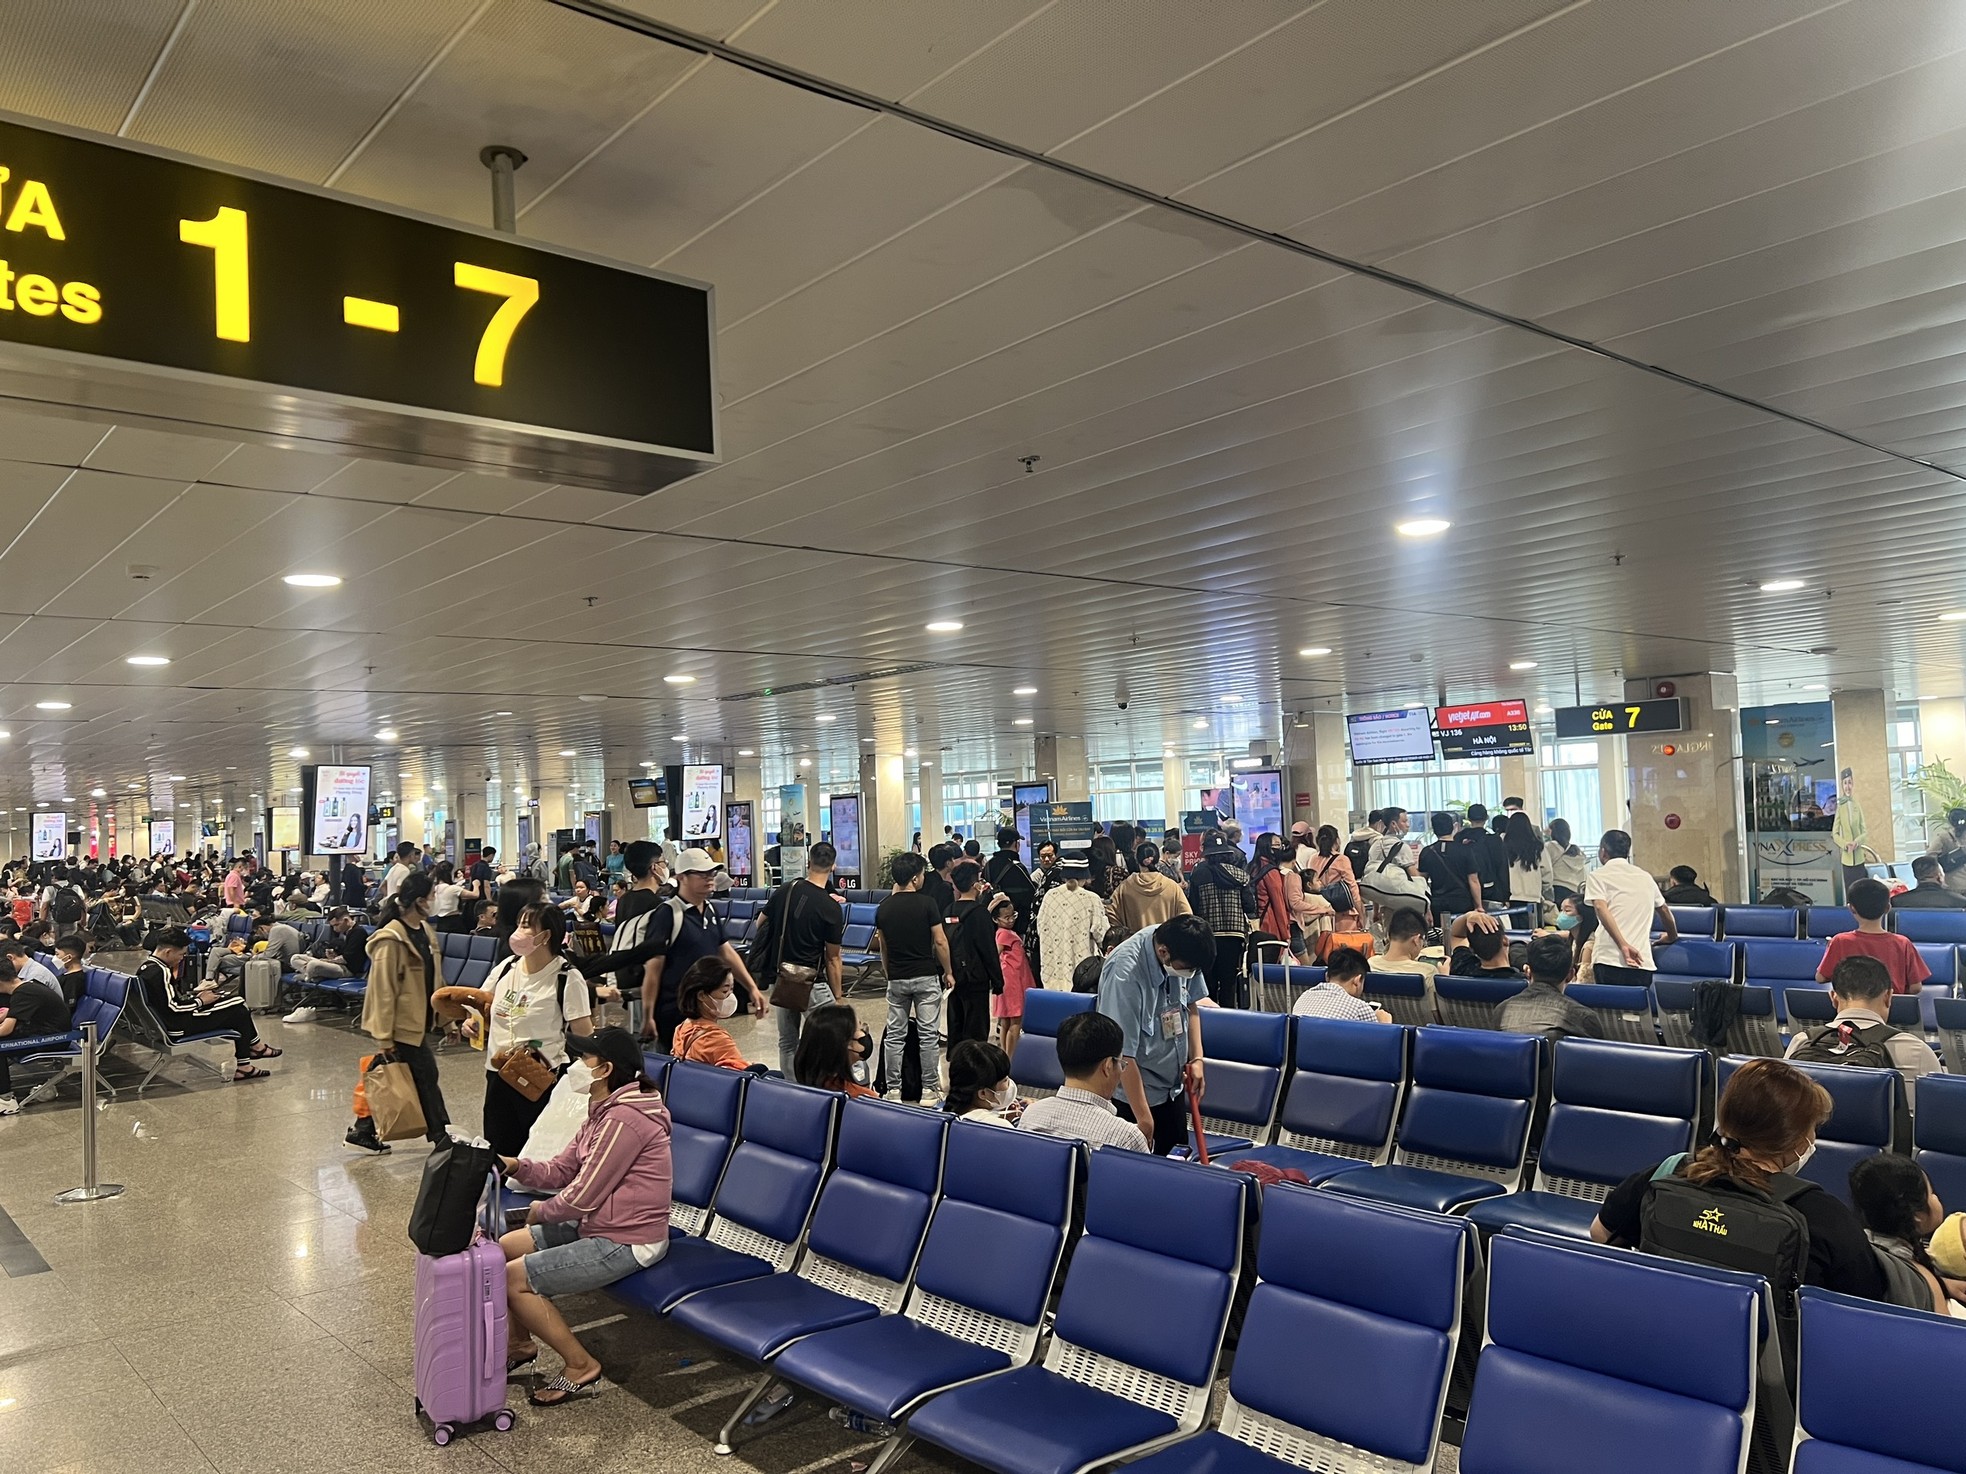 Bất ngờ hình ảnh Sân bay Tân Sơn Nhất, cửa ngõ về miền Tây ngày 26 Tết - Ảnh 3.